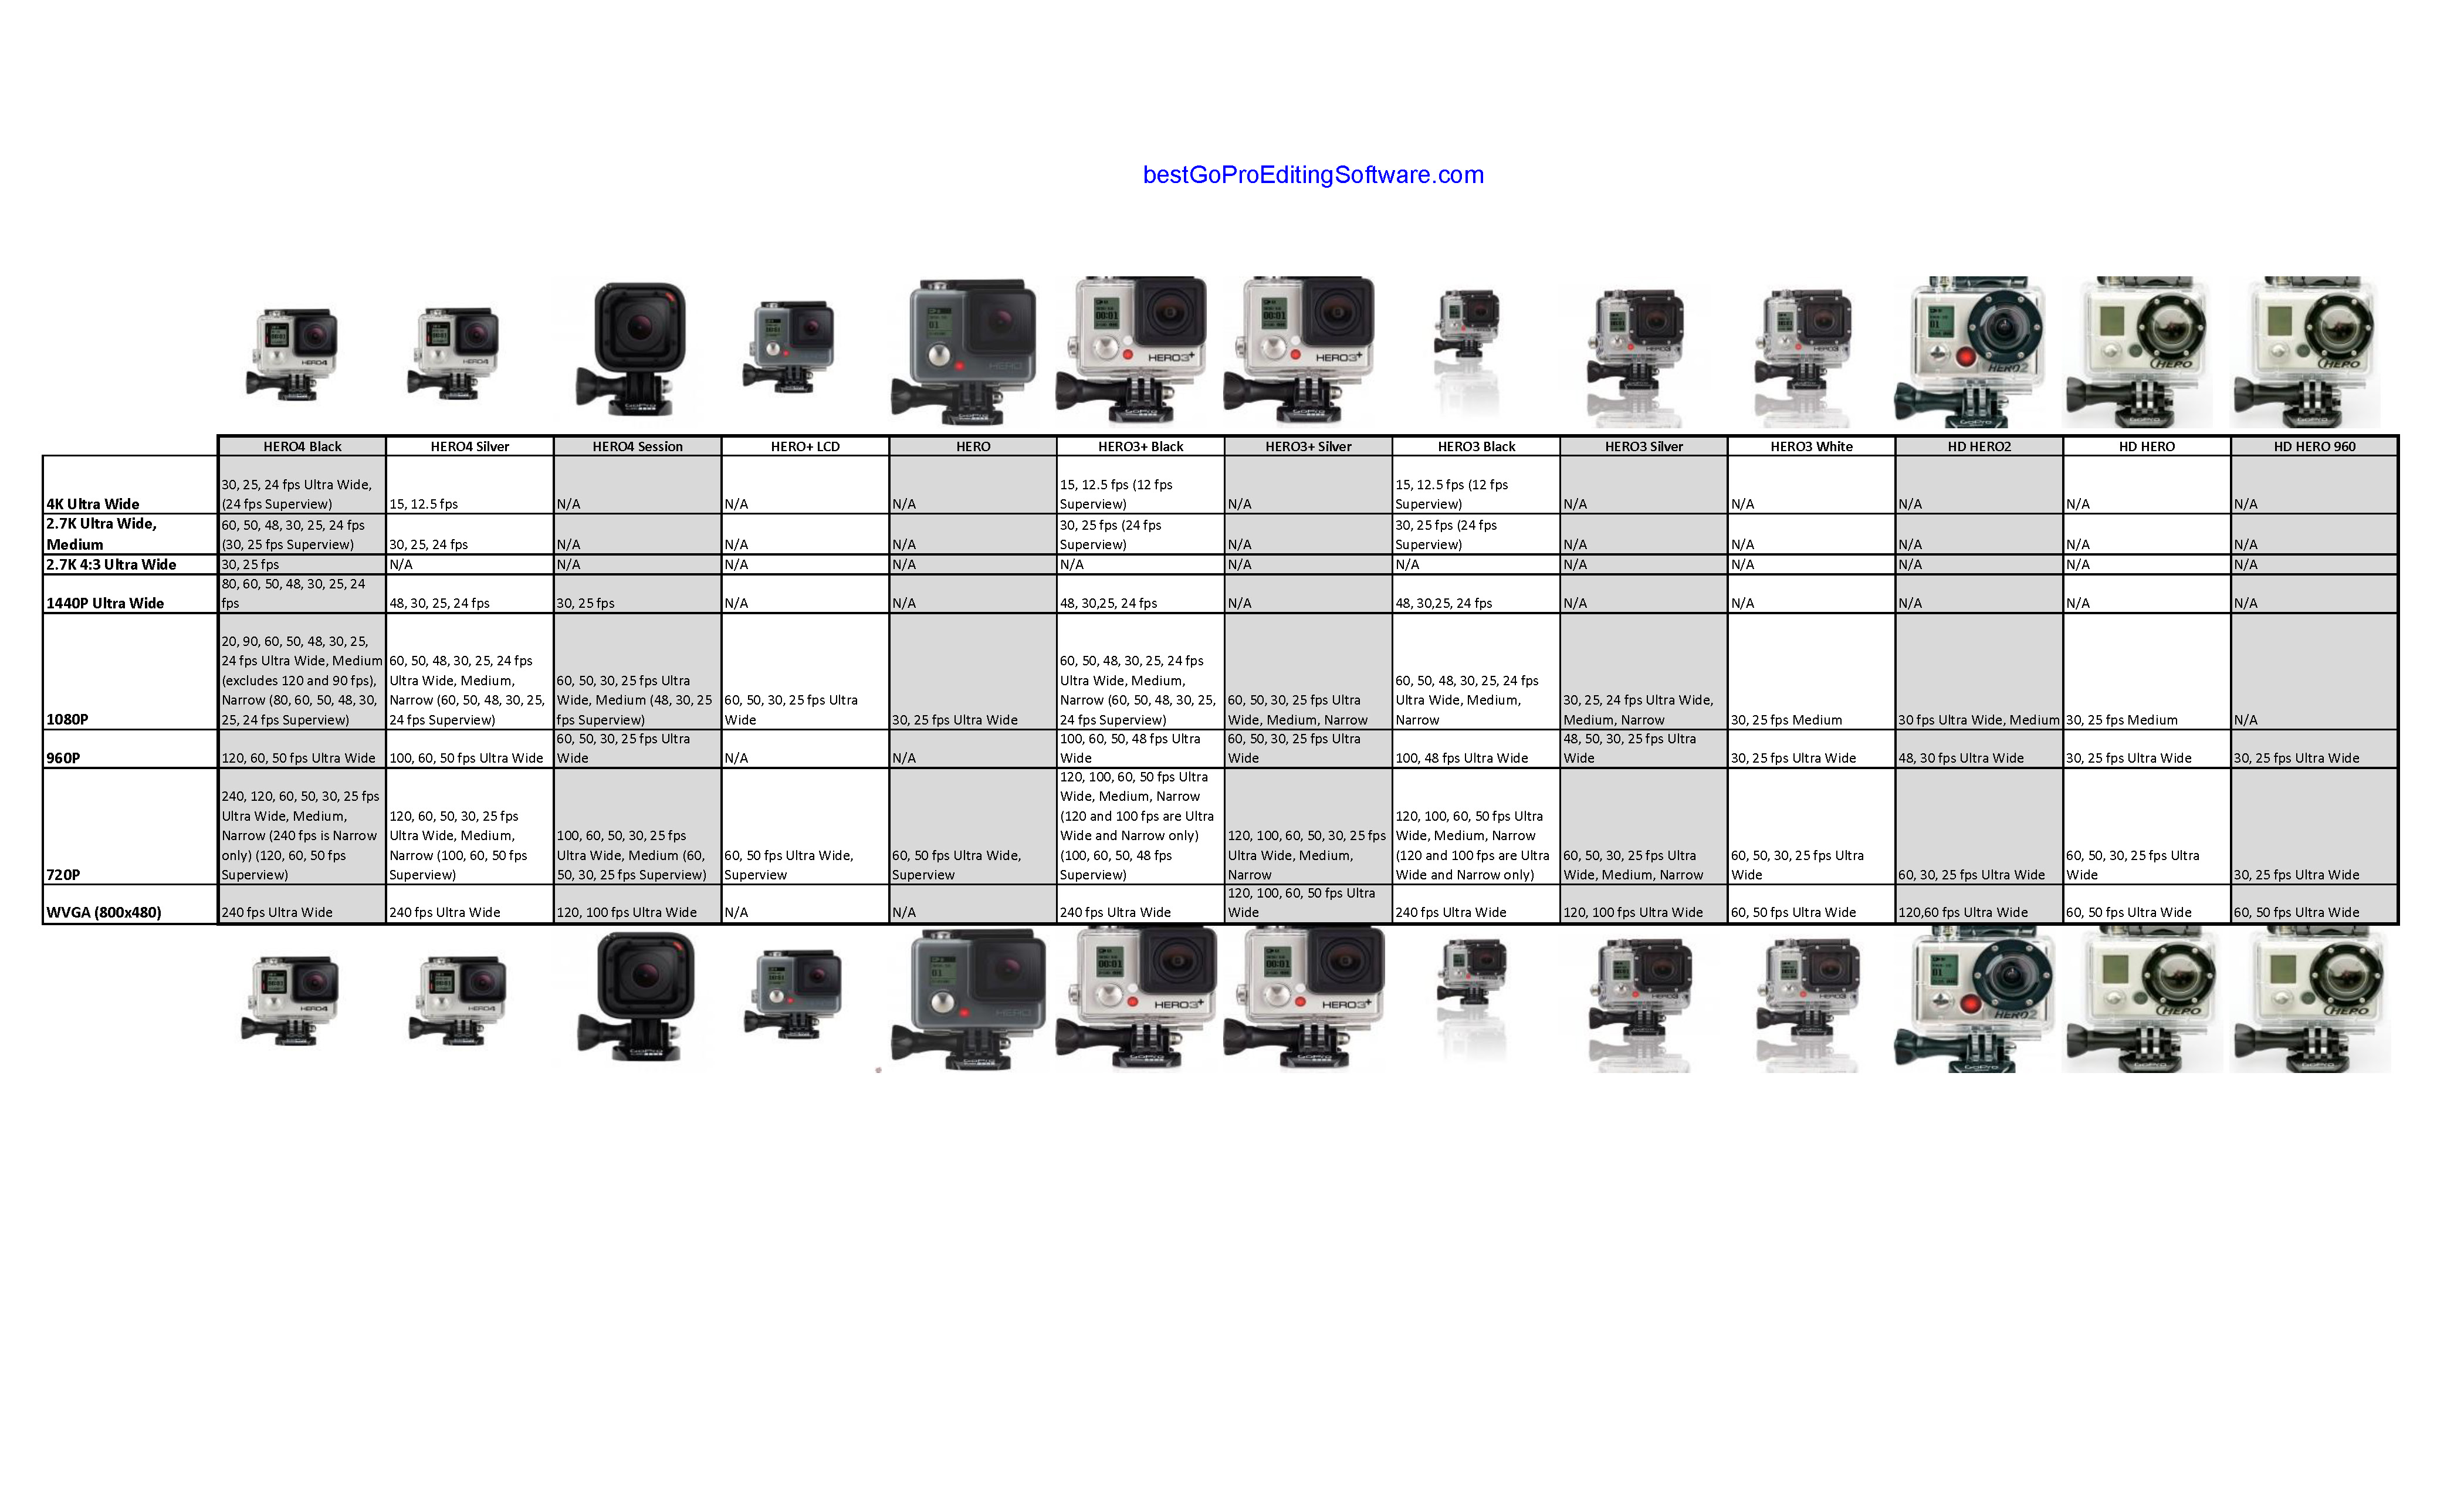 Gopro Camera Comparison Chart